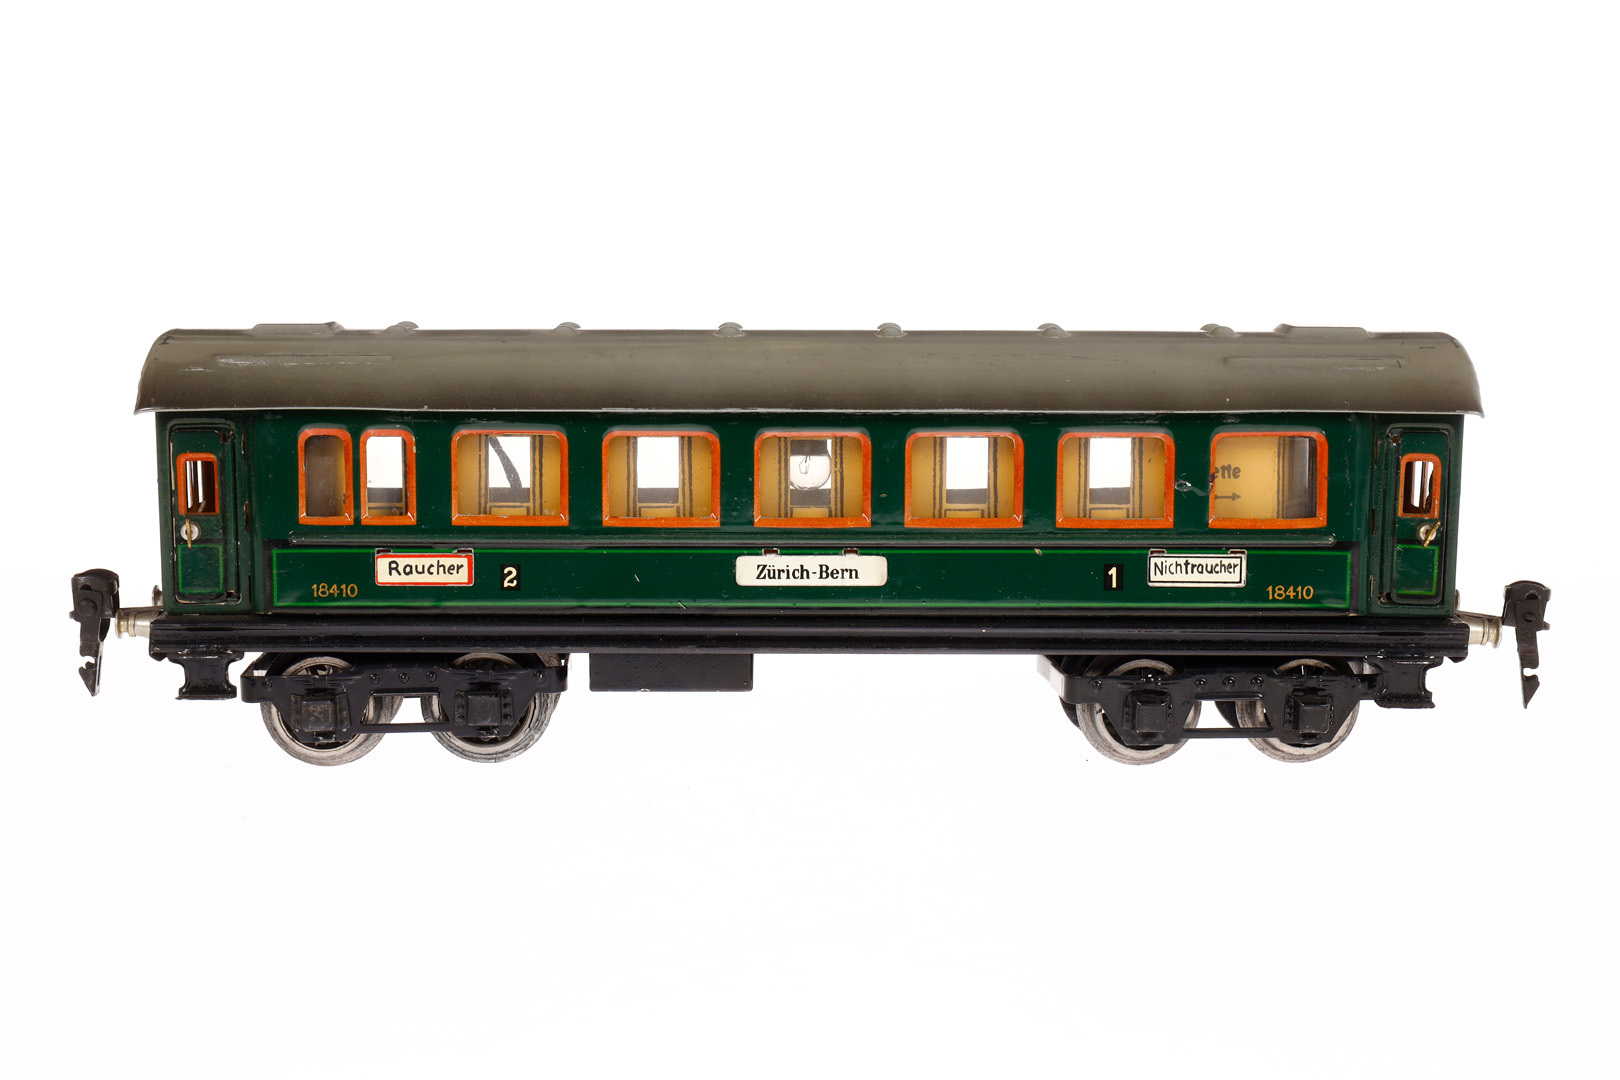 Märklin Personenwagen 1841 G, Spur 0, CL, mit Inneneinrichtung, Beleuchtung, versch. Schildern, 4 AT